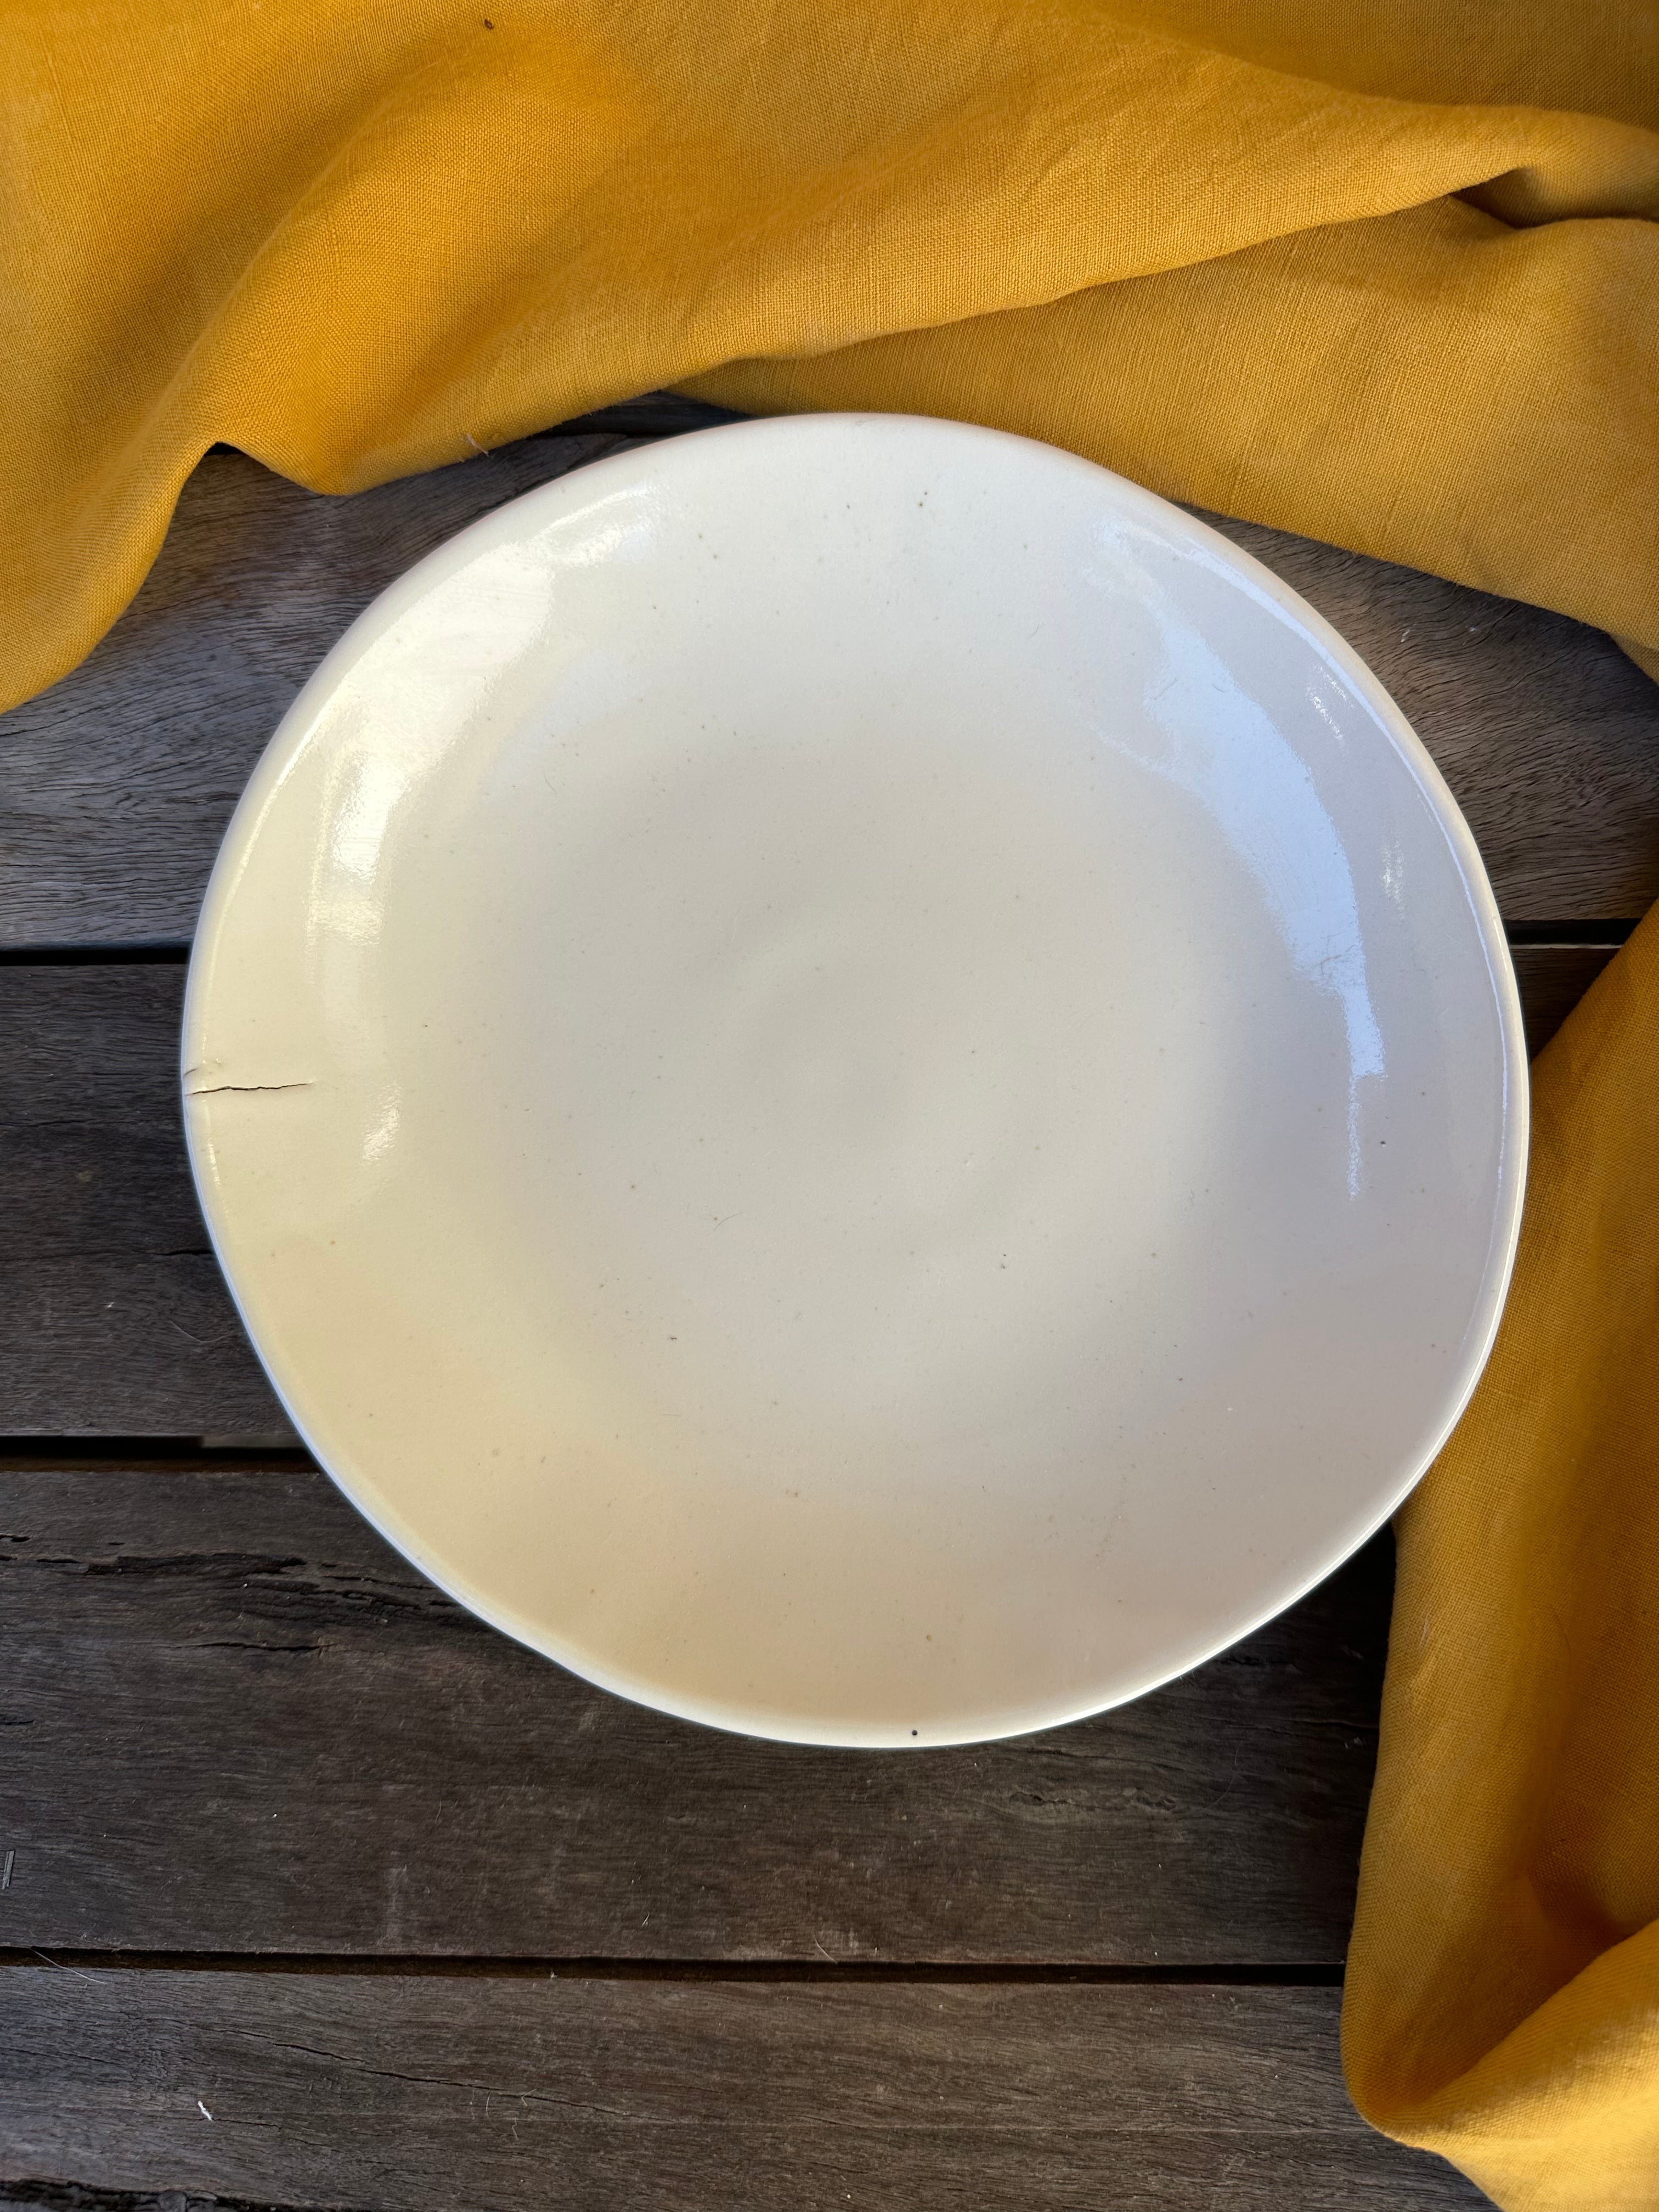 White gloss dish